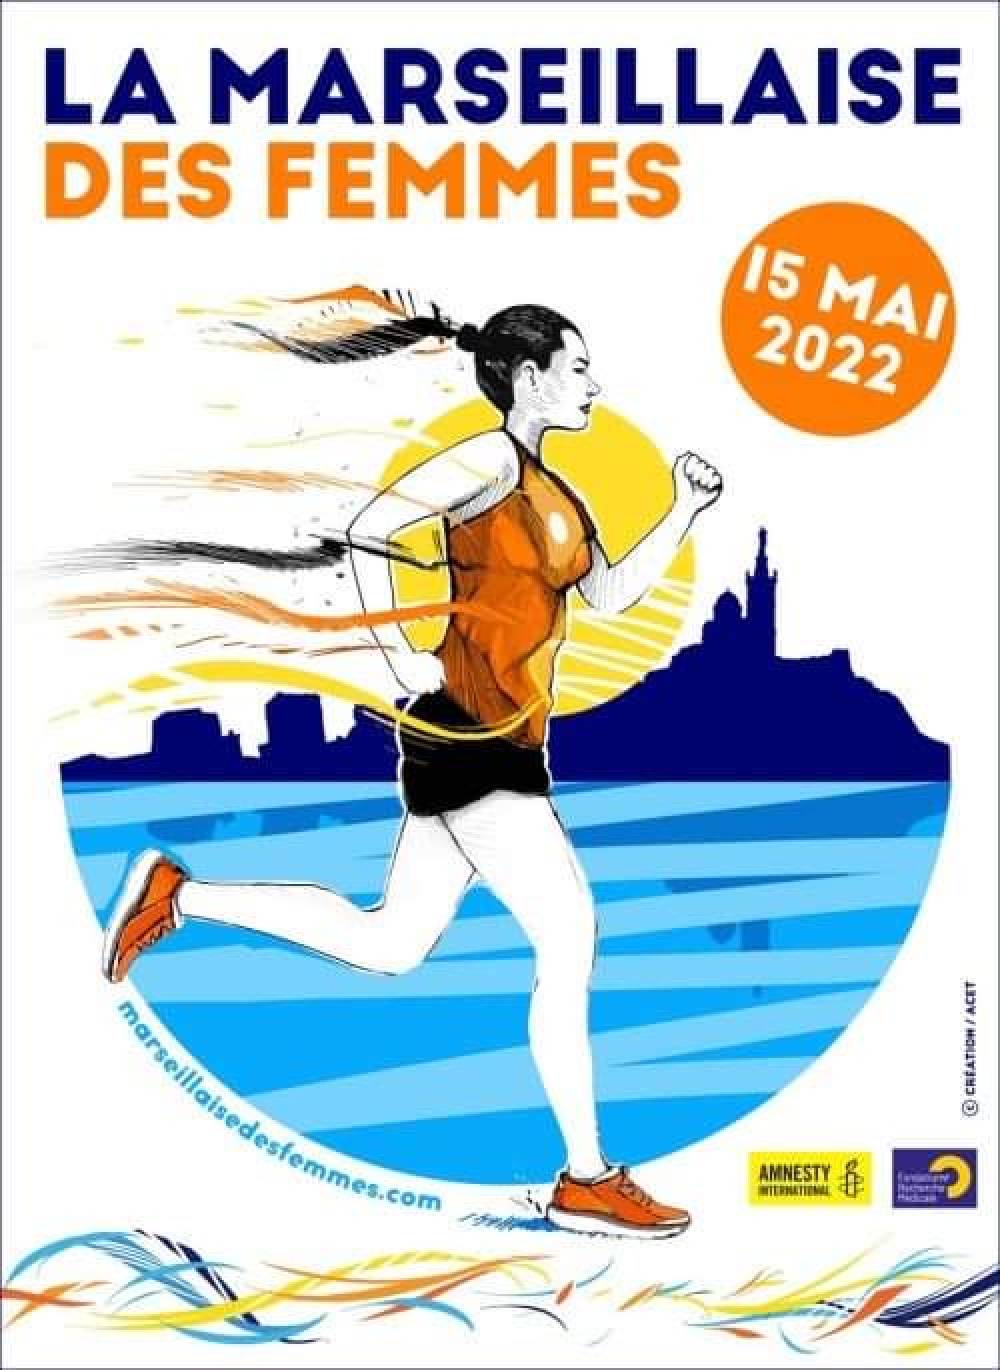 Deuz SAMEDI 14 MAI 2022 // LA MARSEILLAISE DES FEMMES // MARSEILLE